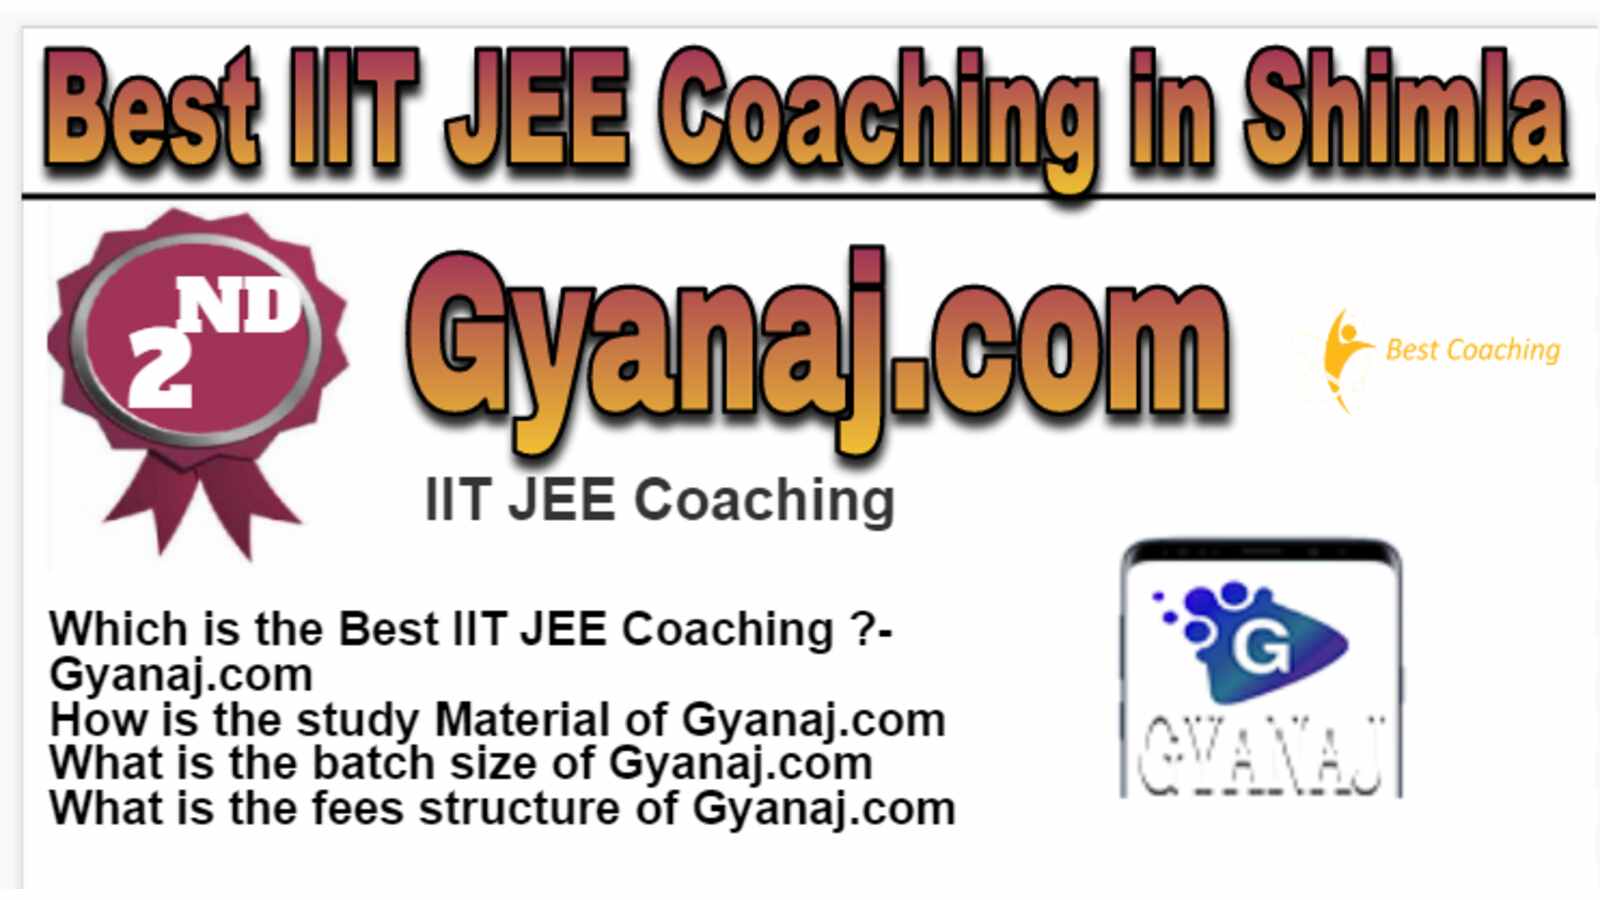 Rank 2 Best IIT JEE Coaching in Shimla